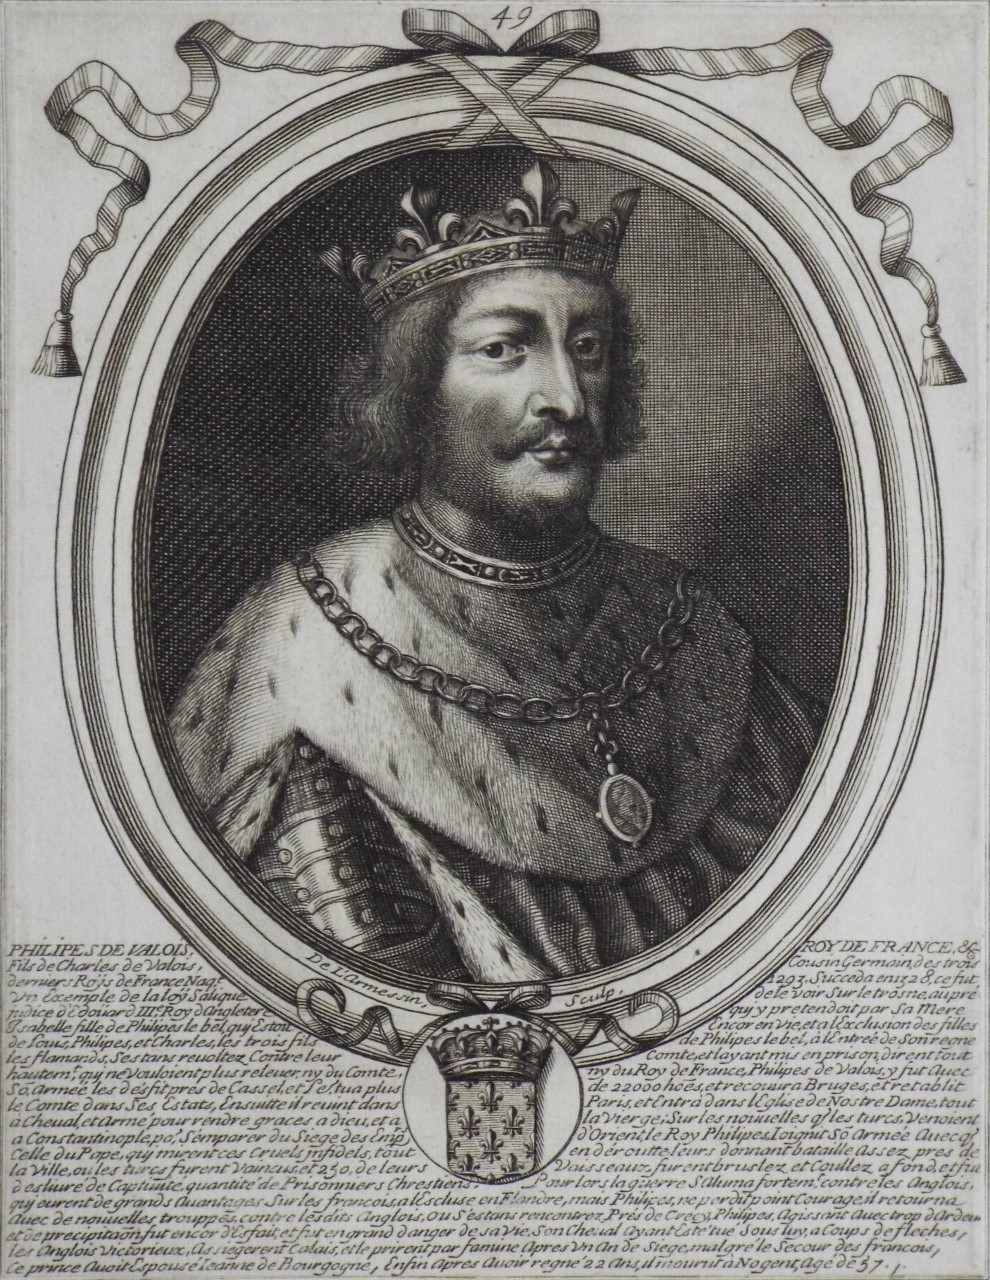 Print - Philipes de Valois Roy de France